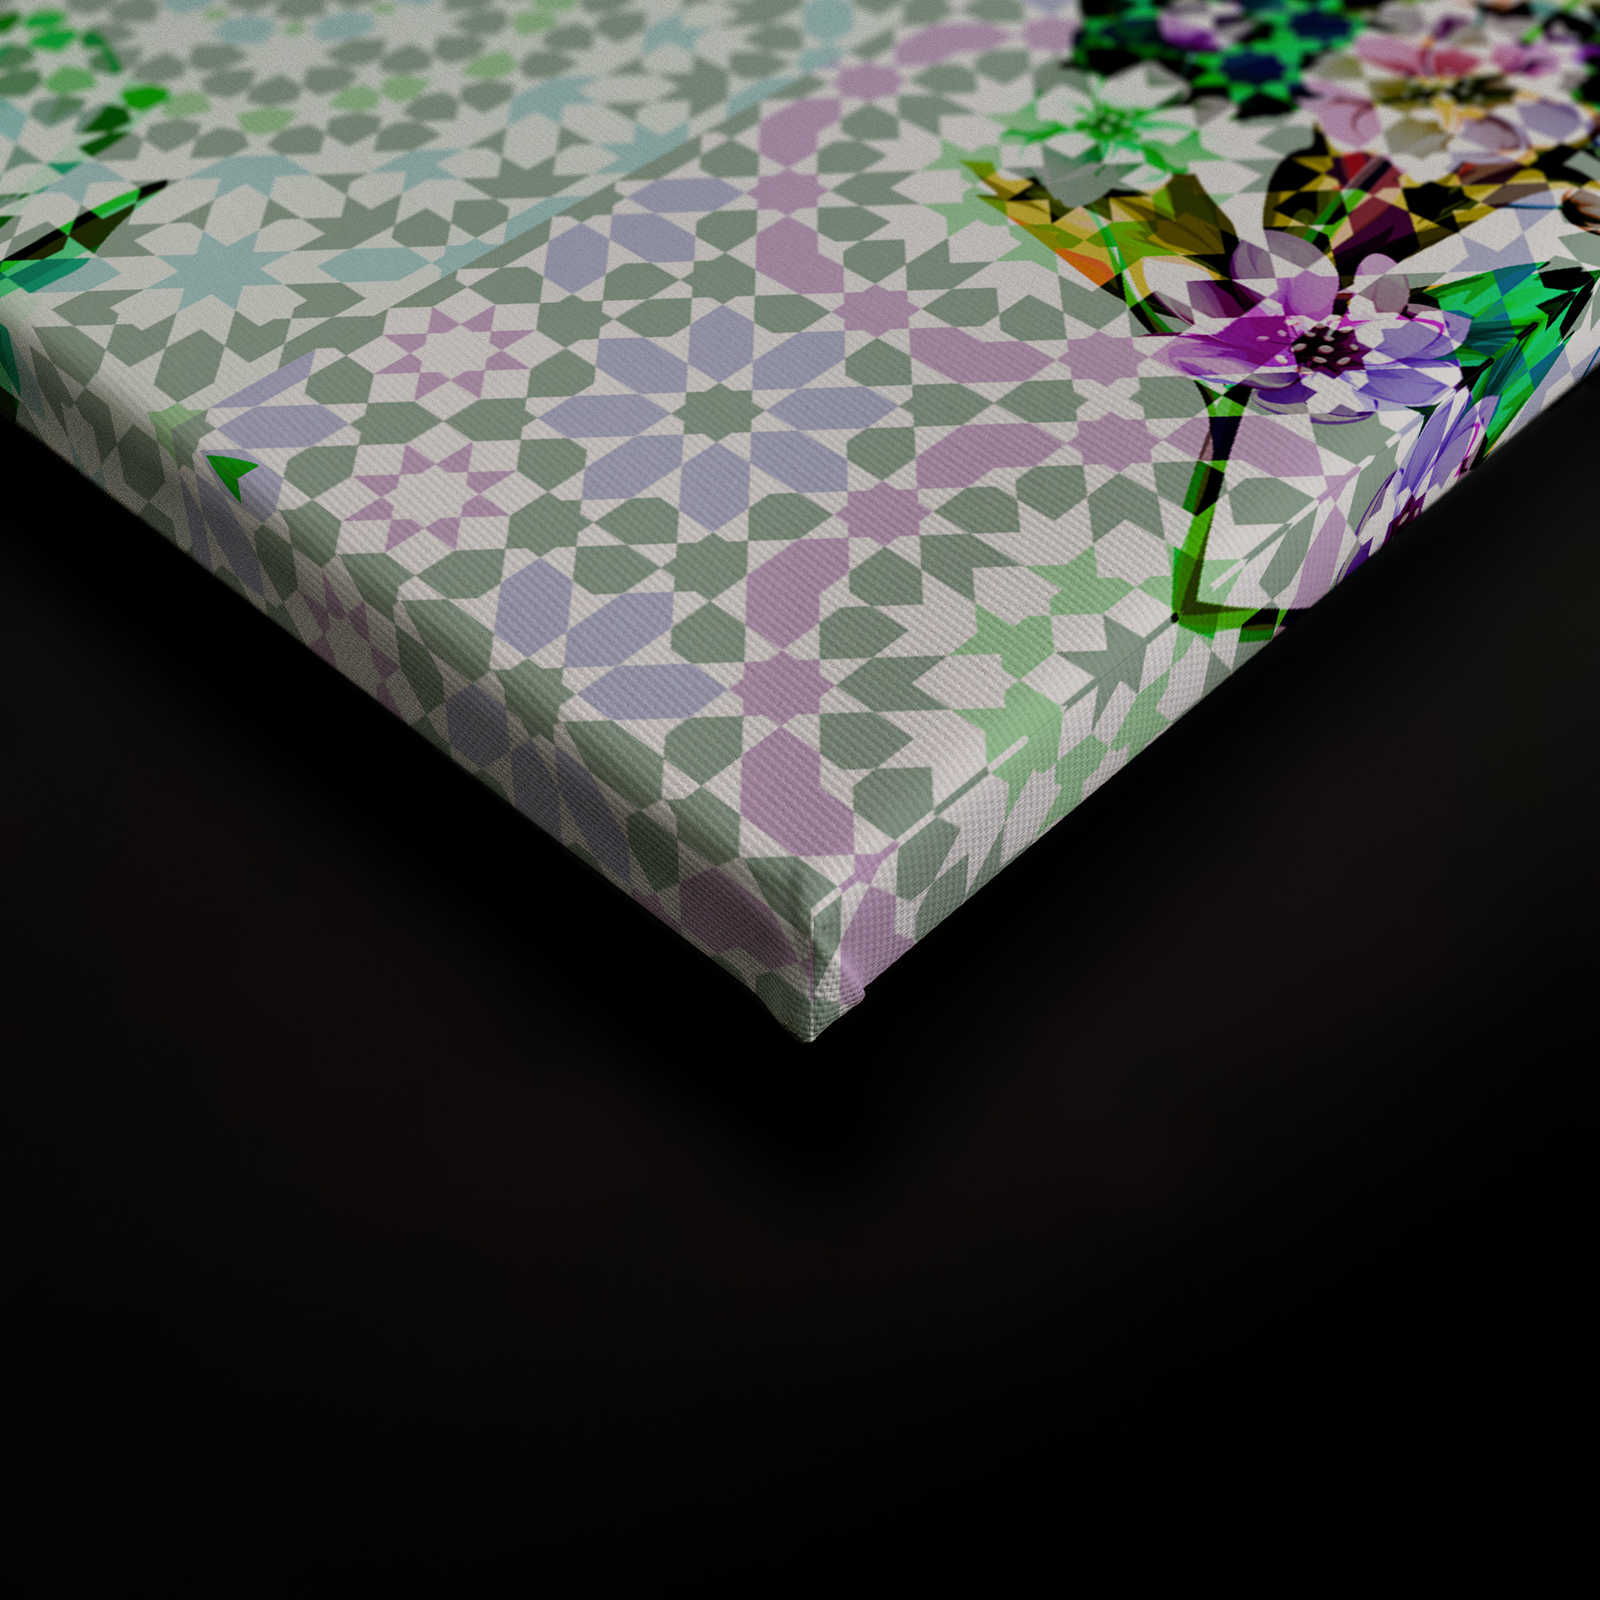             Toile fleurie avec design mosaïque moderne - 0,90 m x 0,60 m
        